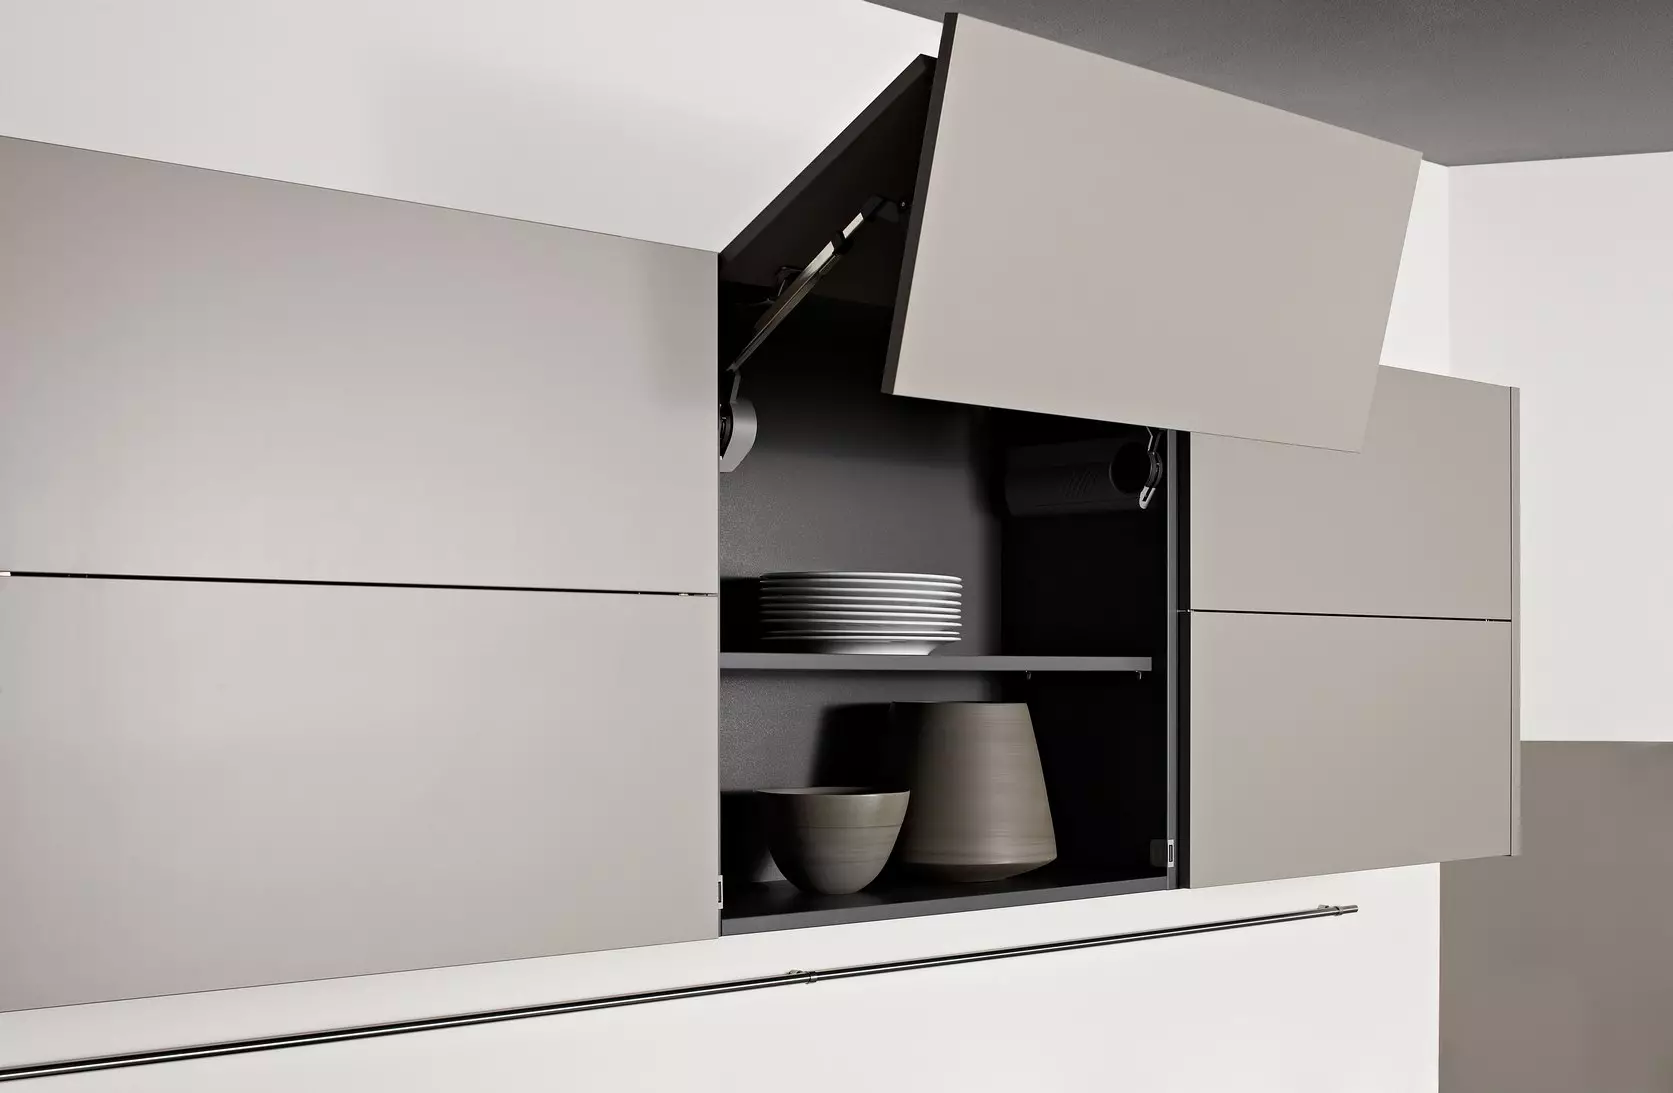 Розміри кухонних шаф (41 фото): креслення стандартних шаф для кухні, стандарти фасадів і навісних шафок, розміри верхніх і нижніх шаф гарнітура, висота ящиків 9387_15